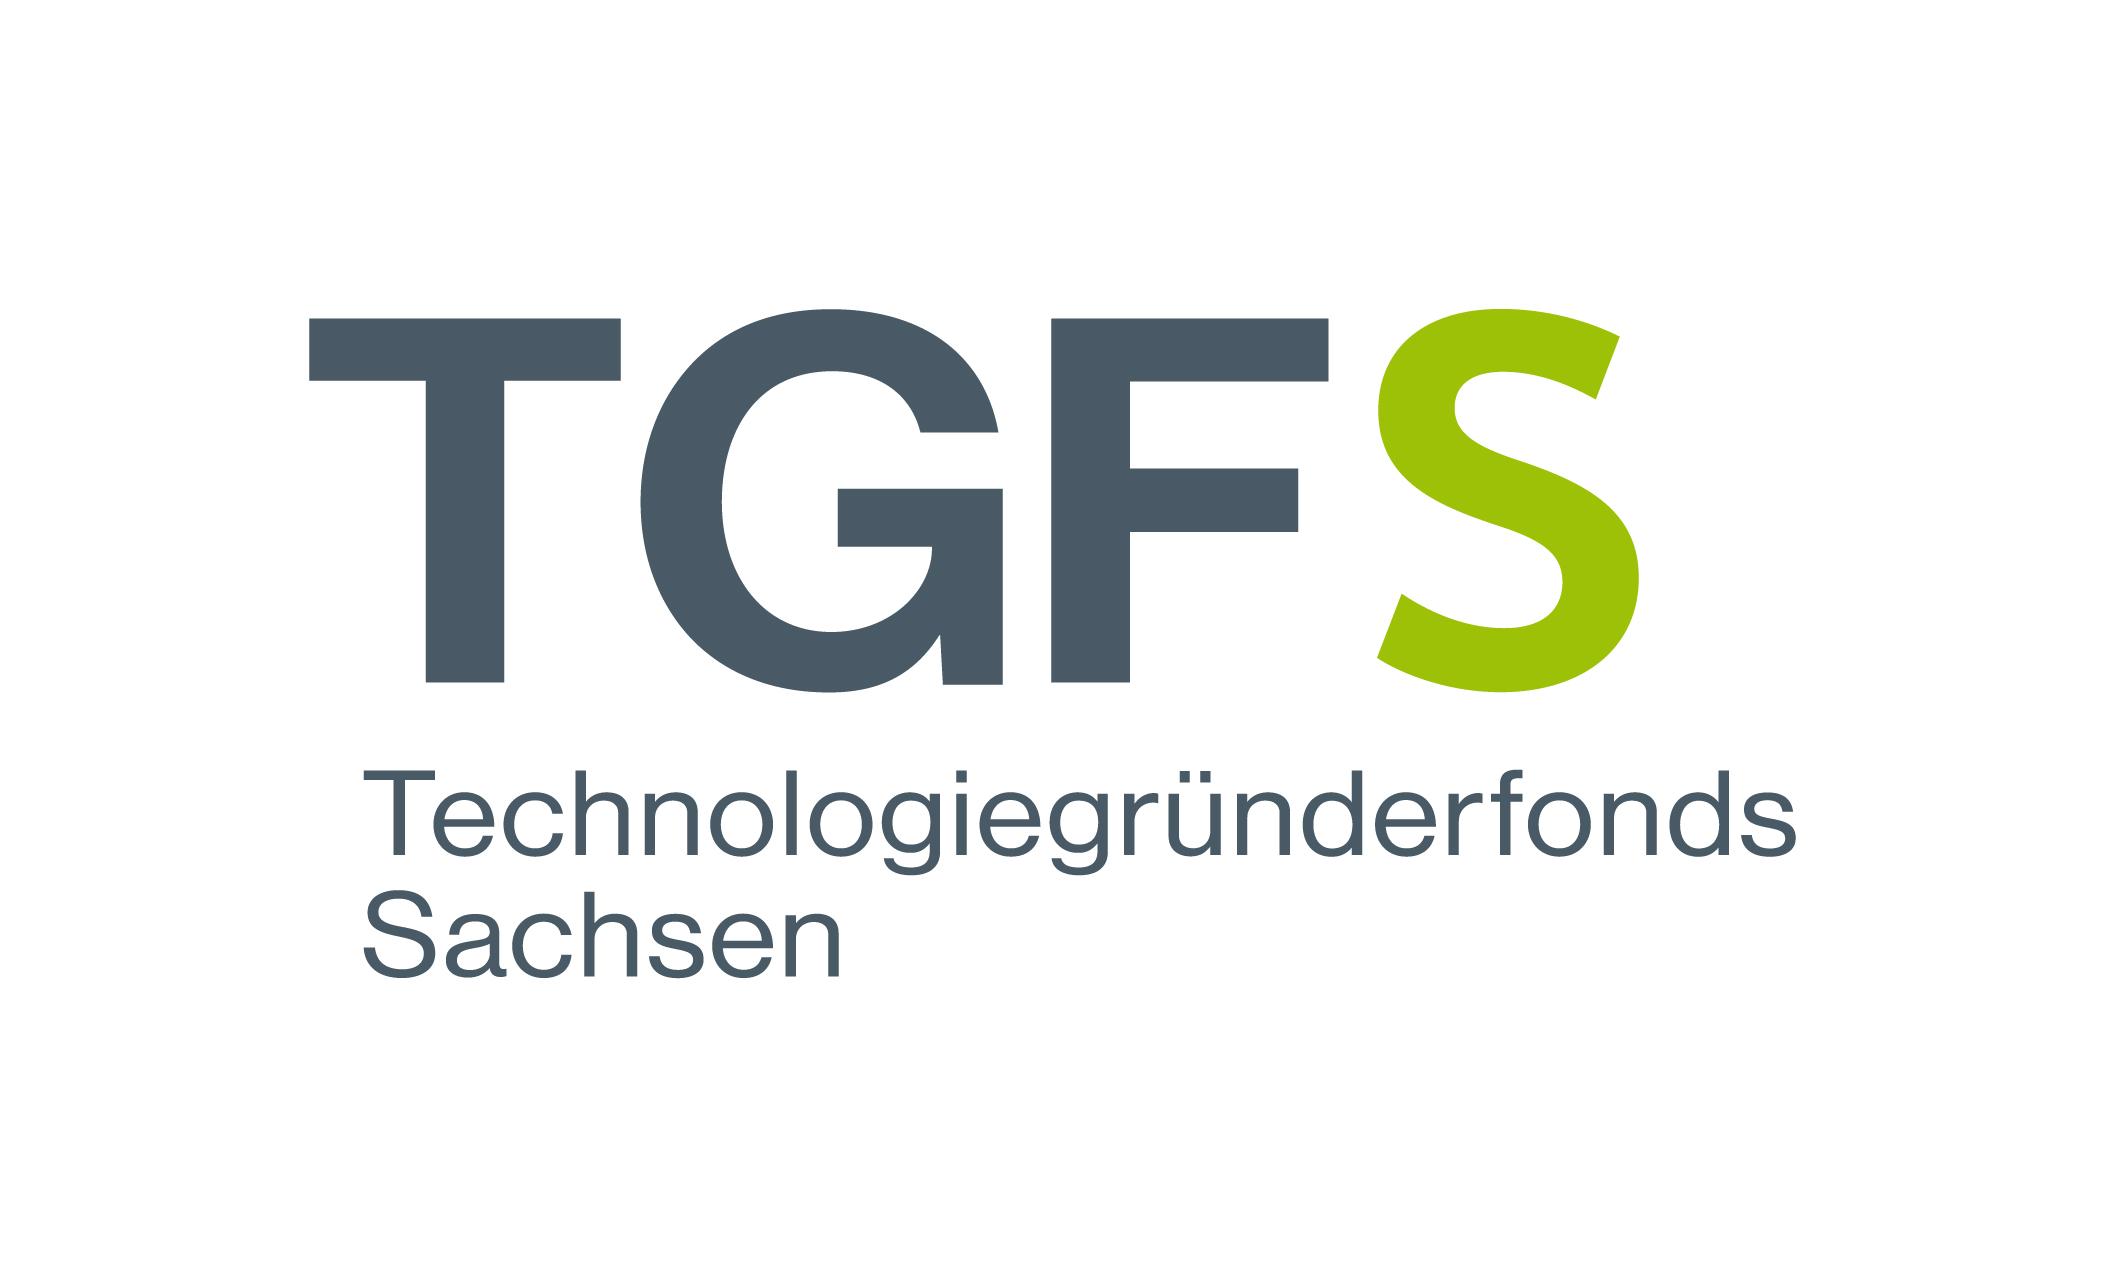 Technologiegründerfonds Sachsen (TGFS)